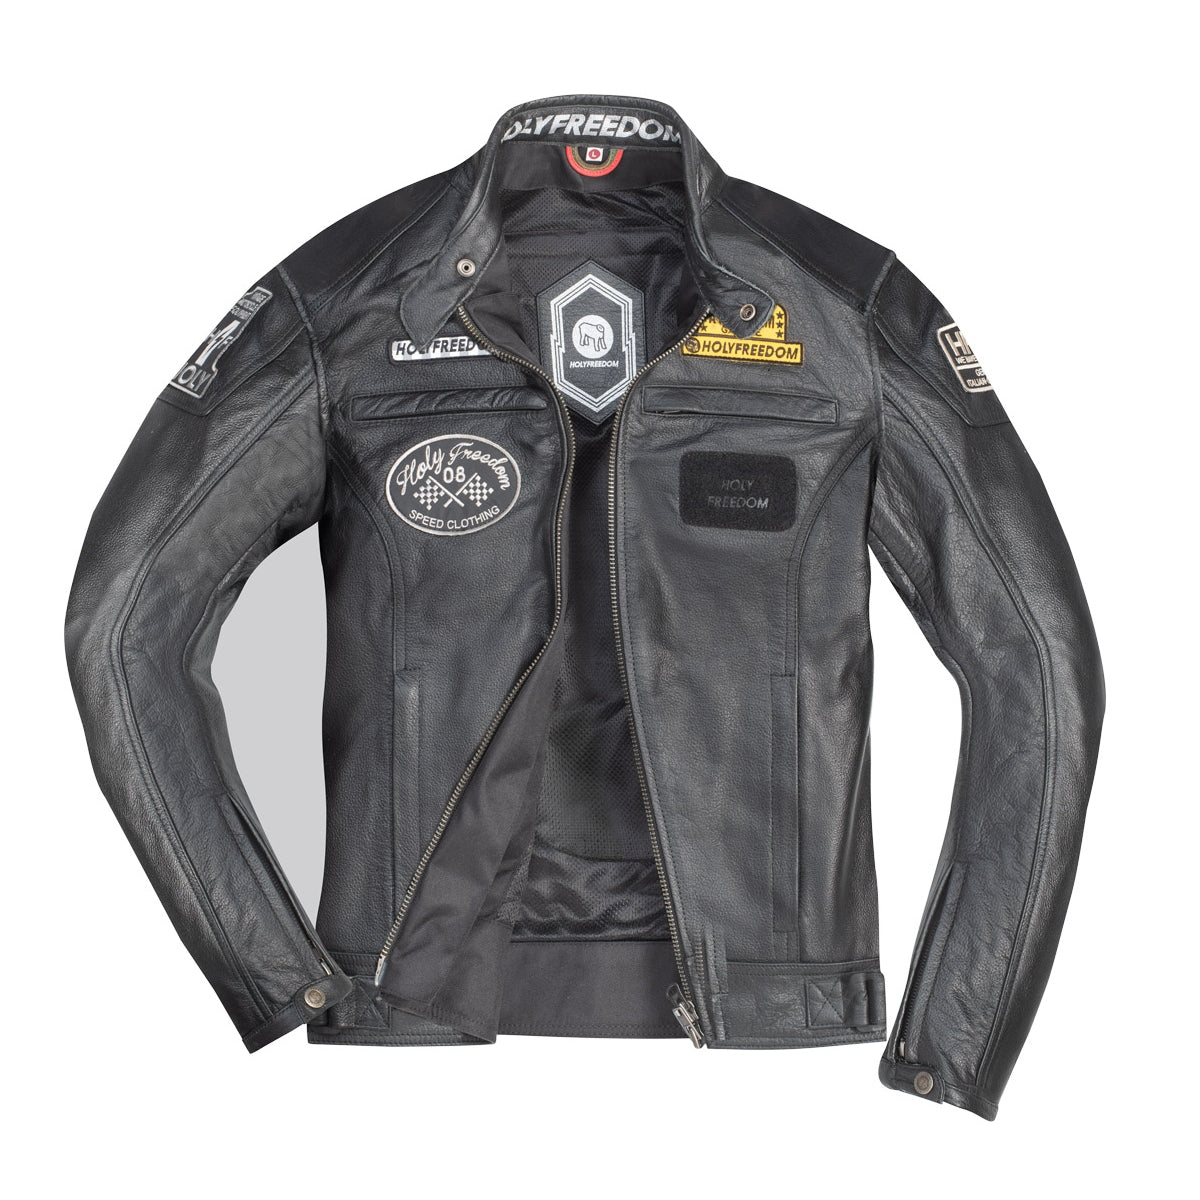 Holyfreedom Level Leather Jacket - Black